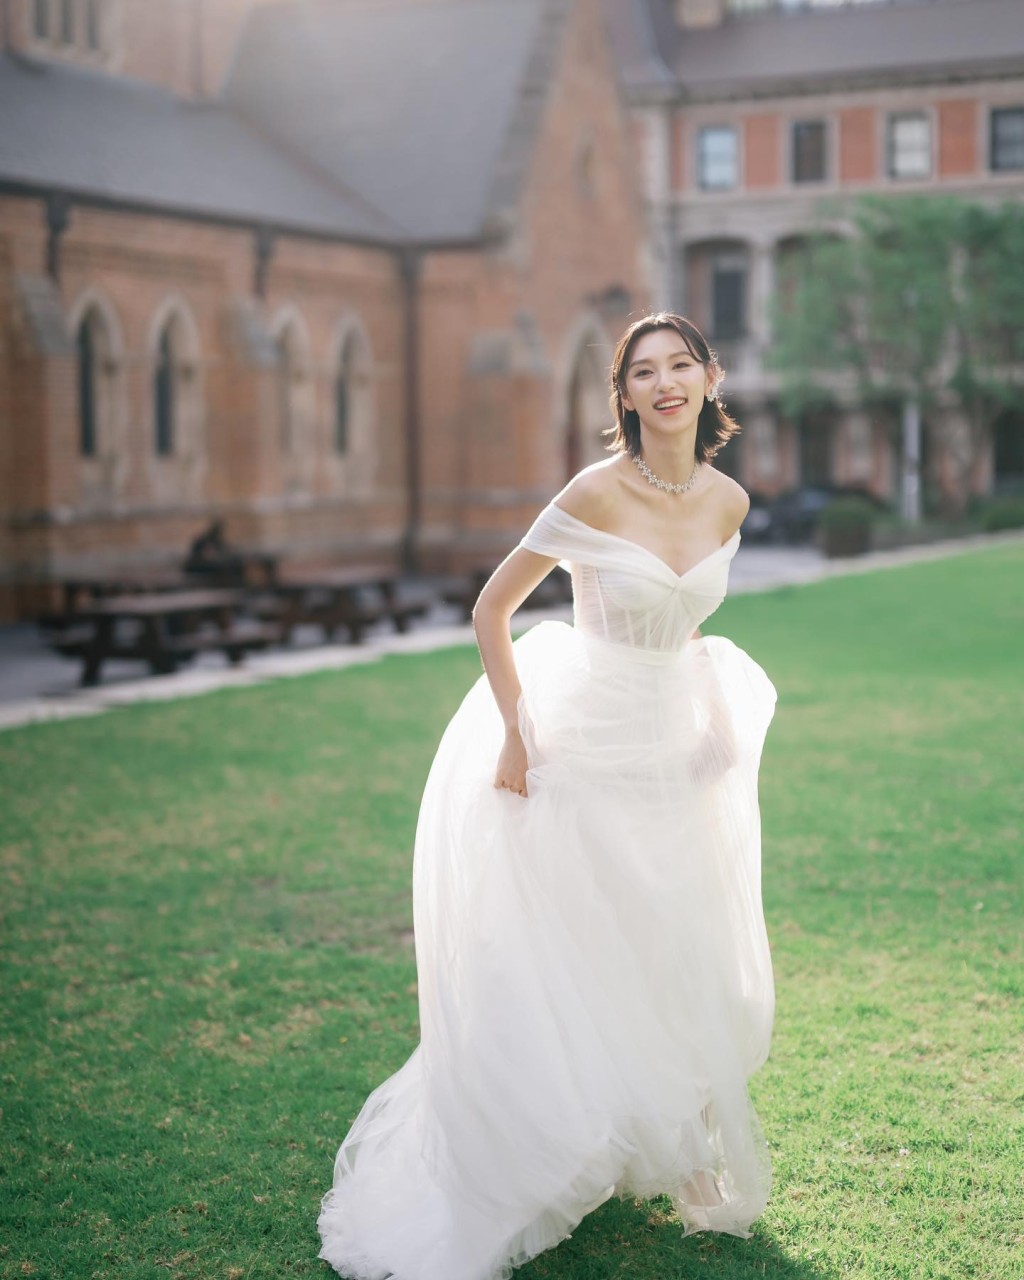 王丹妮在晚宴中穿的婚纱出自本地著名设计师Kev Yiu之手。